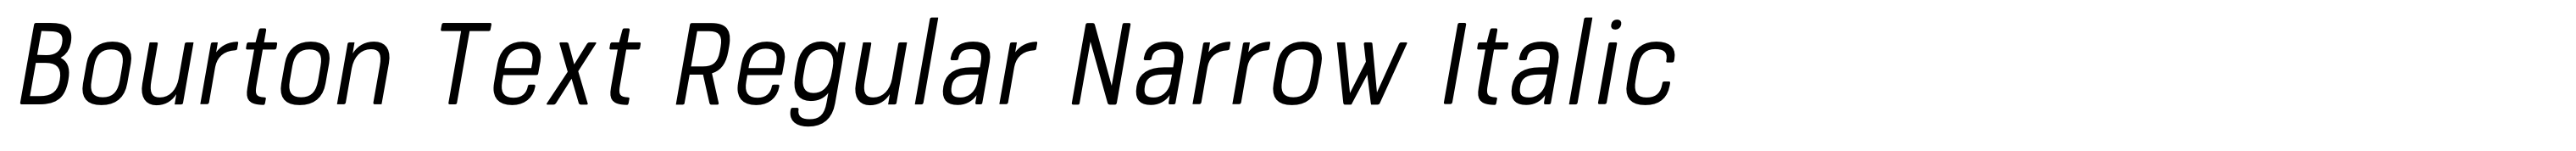 Bourton Text Regular Narrow Italic